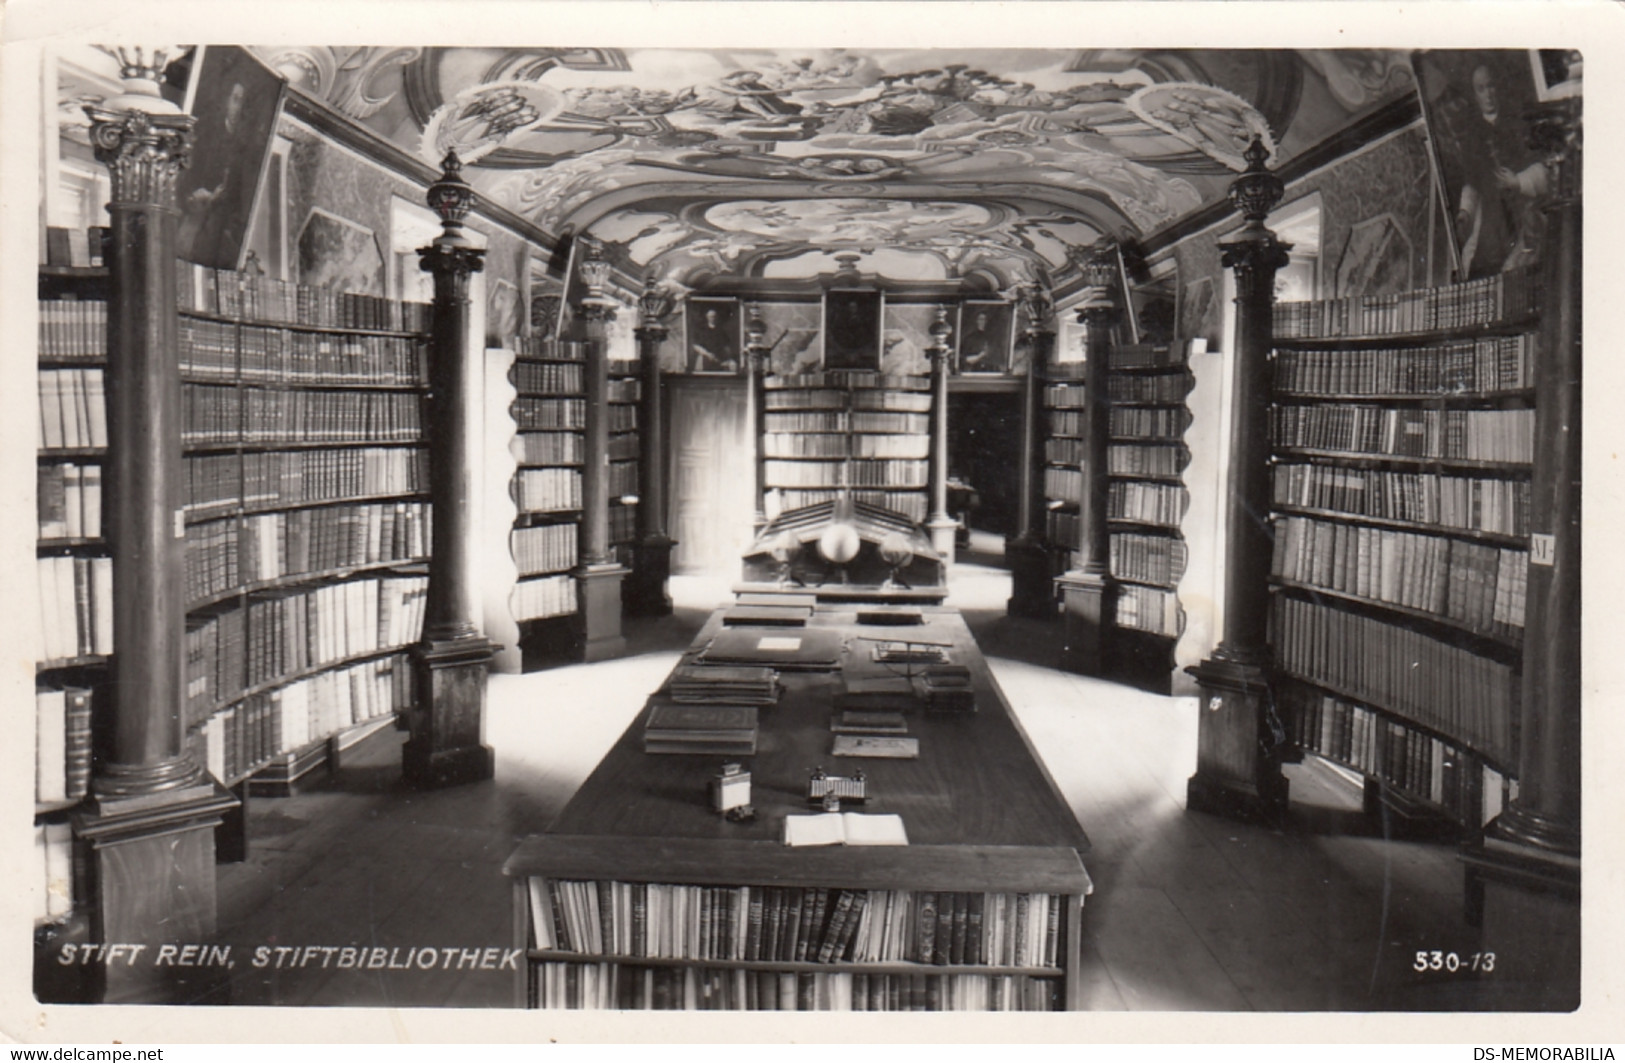 Library - Stiftbibliothek Rein Austria 1958 - Libraries